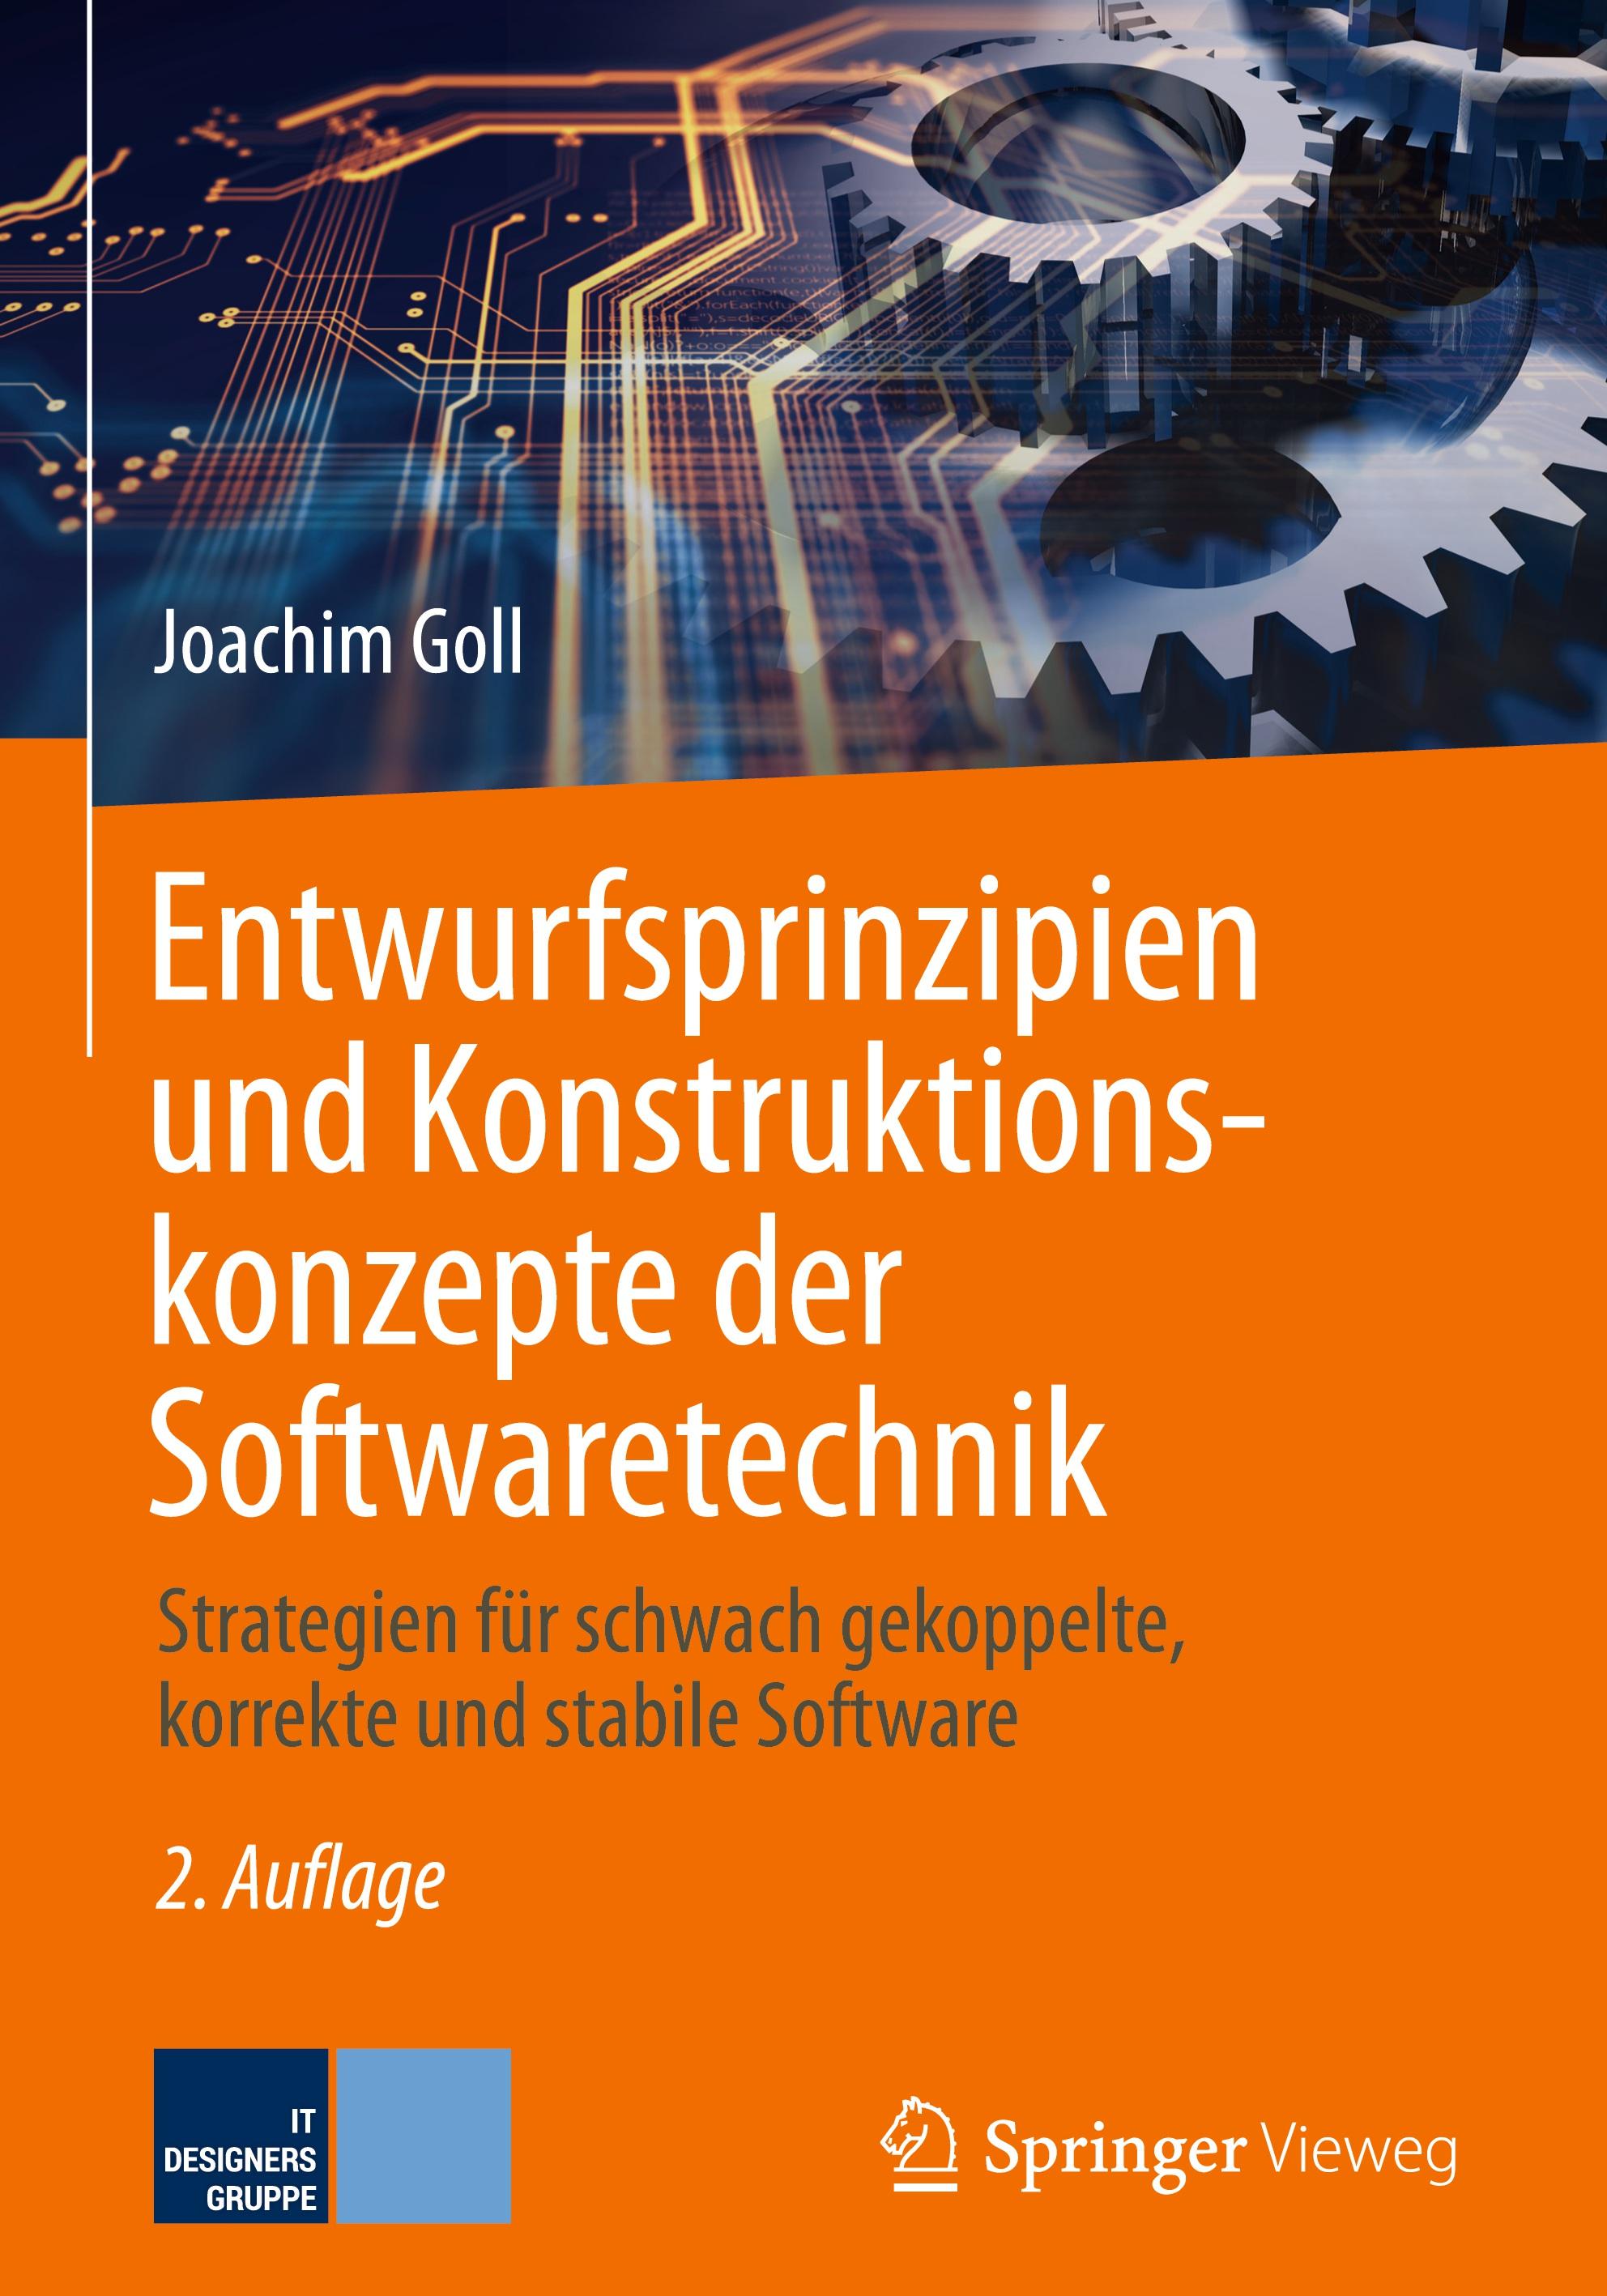 Entwurfsprinzipien und Konstruktionskonzepte der Softwaretechnik - Joachim Goll